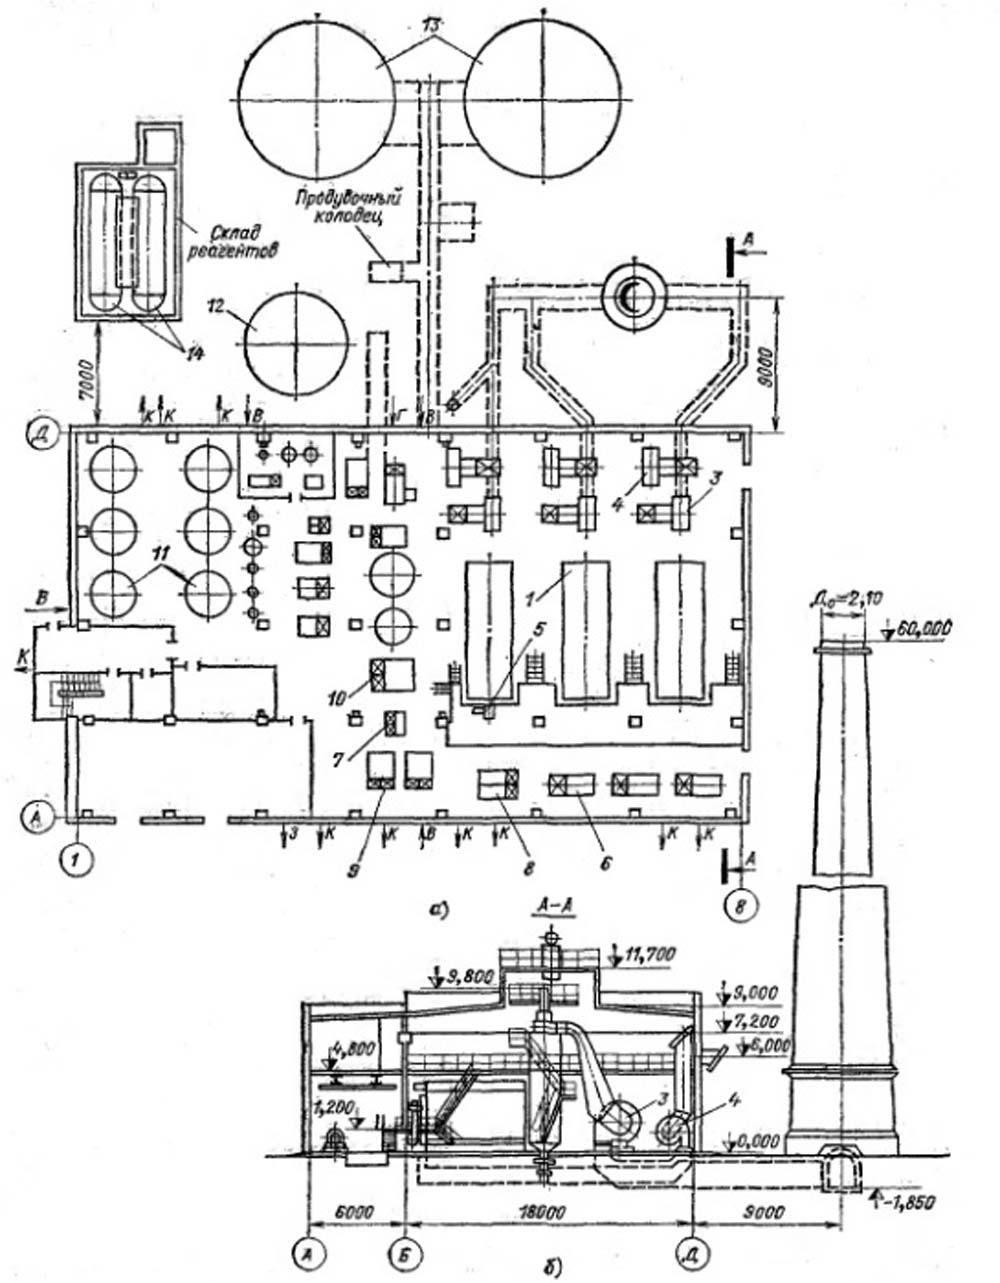 Компоновка водогрейной котельной с котлами КВ - ГМ - 20 для открытой системы теплоснабжения